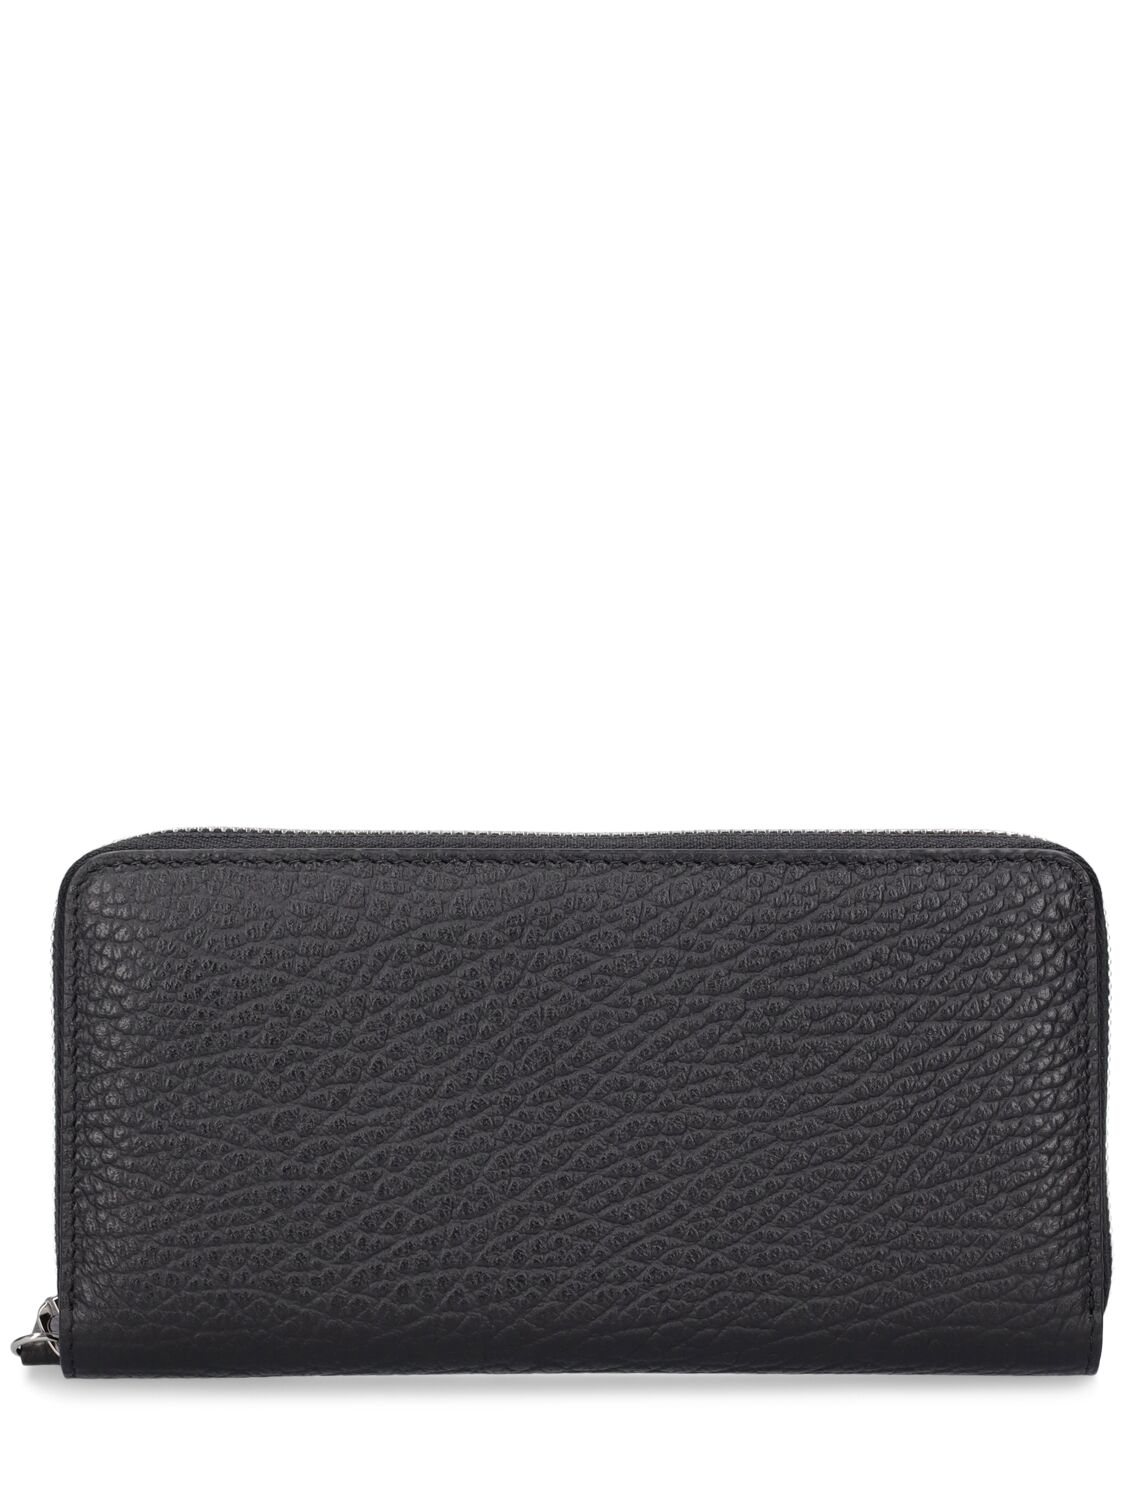 Maison Margiela Four Stitches Zip-around Wallet In Black